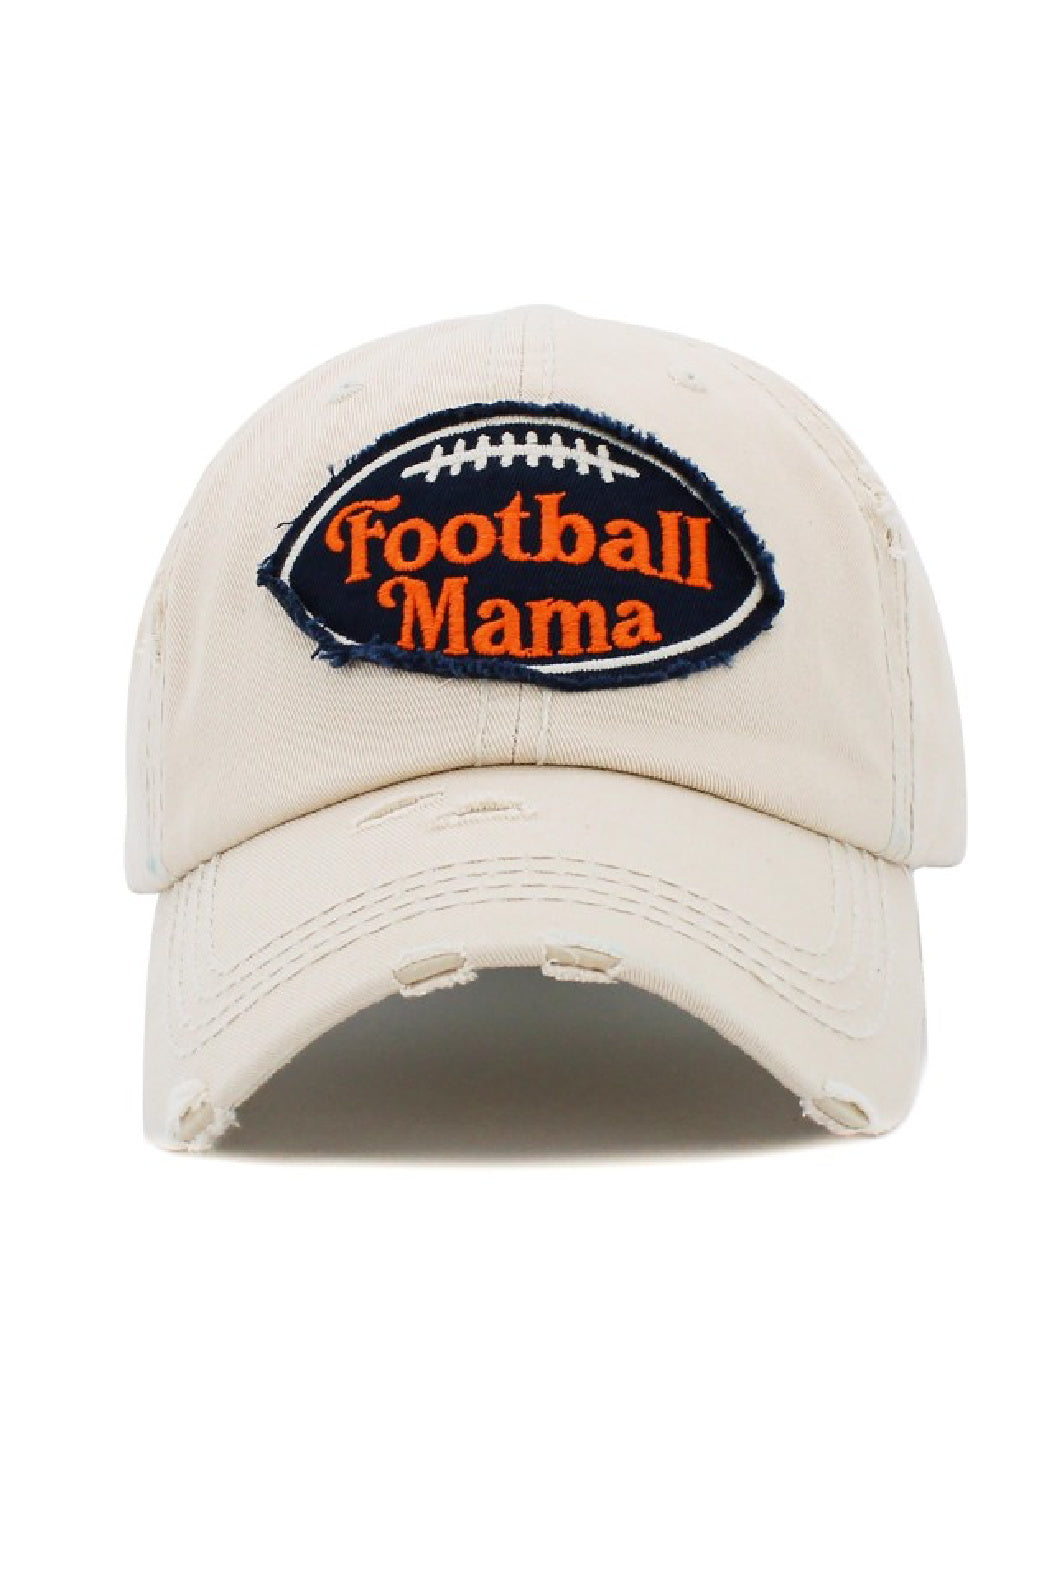 Football Mama Baseball Cap